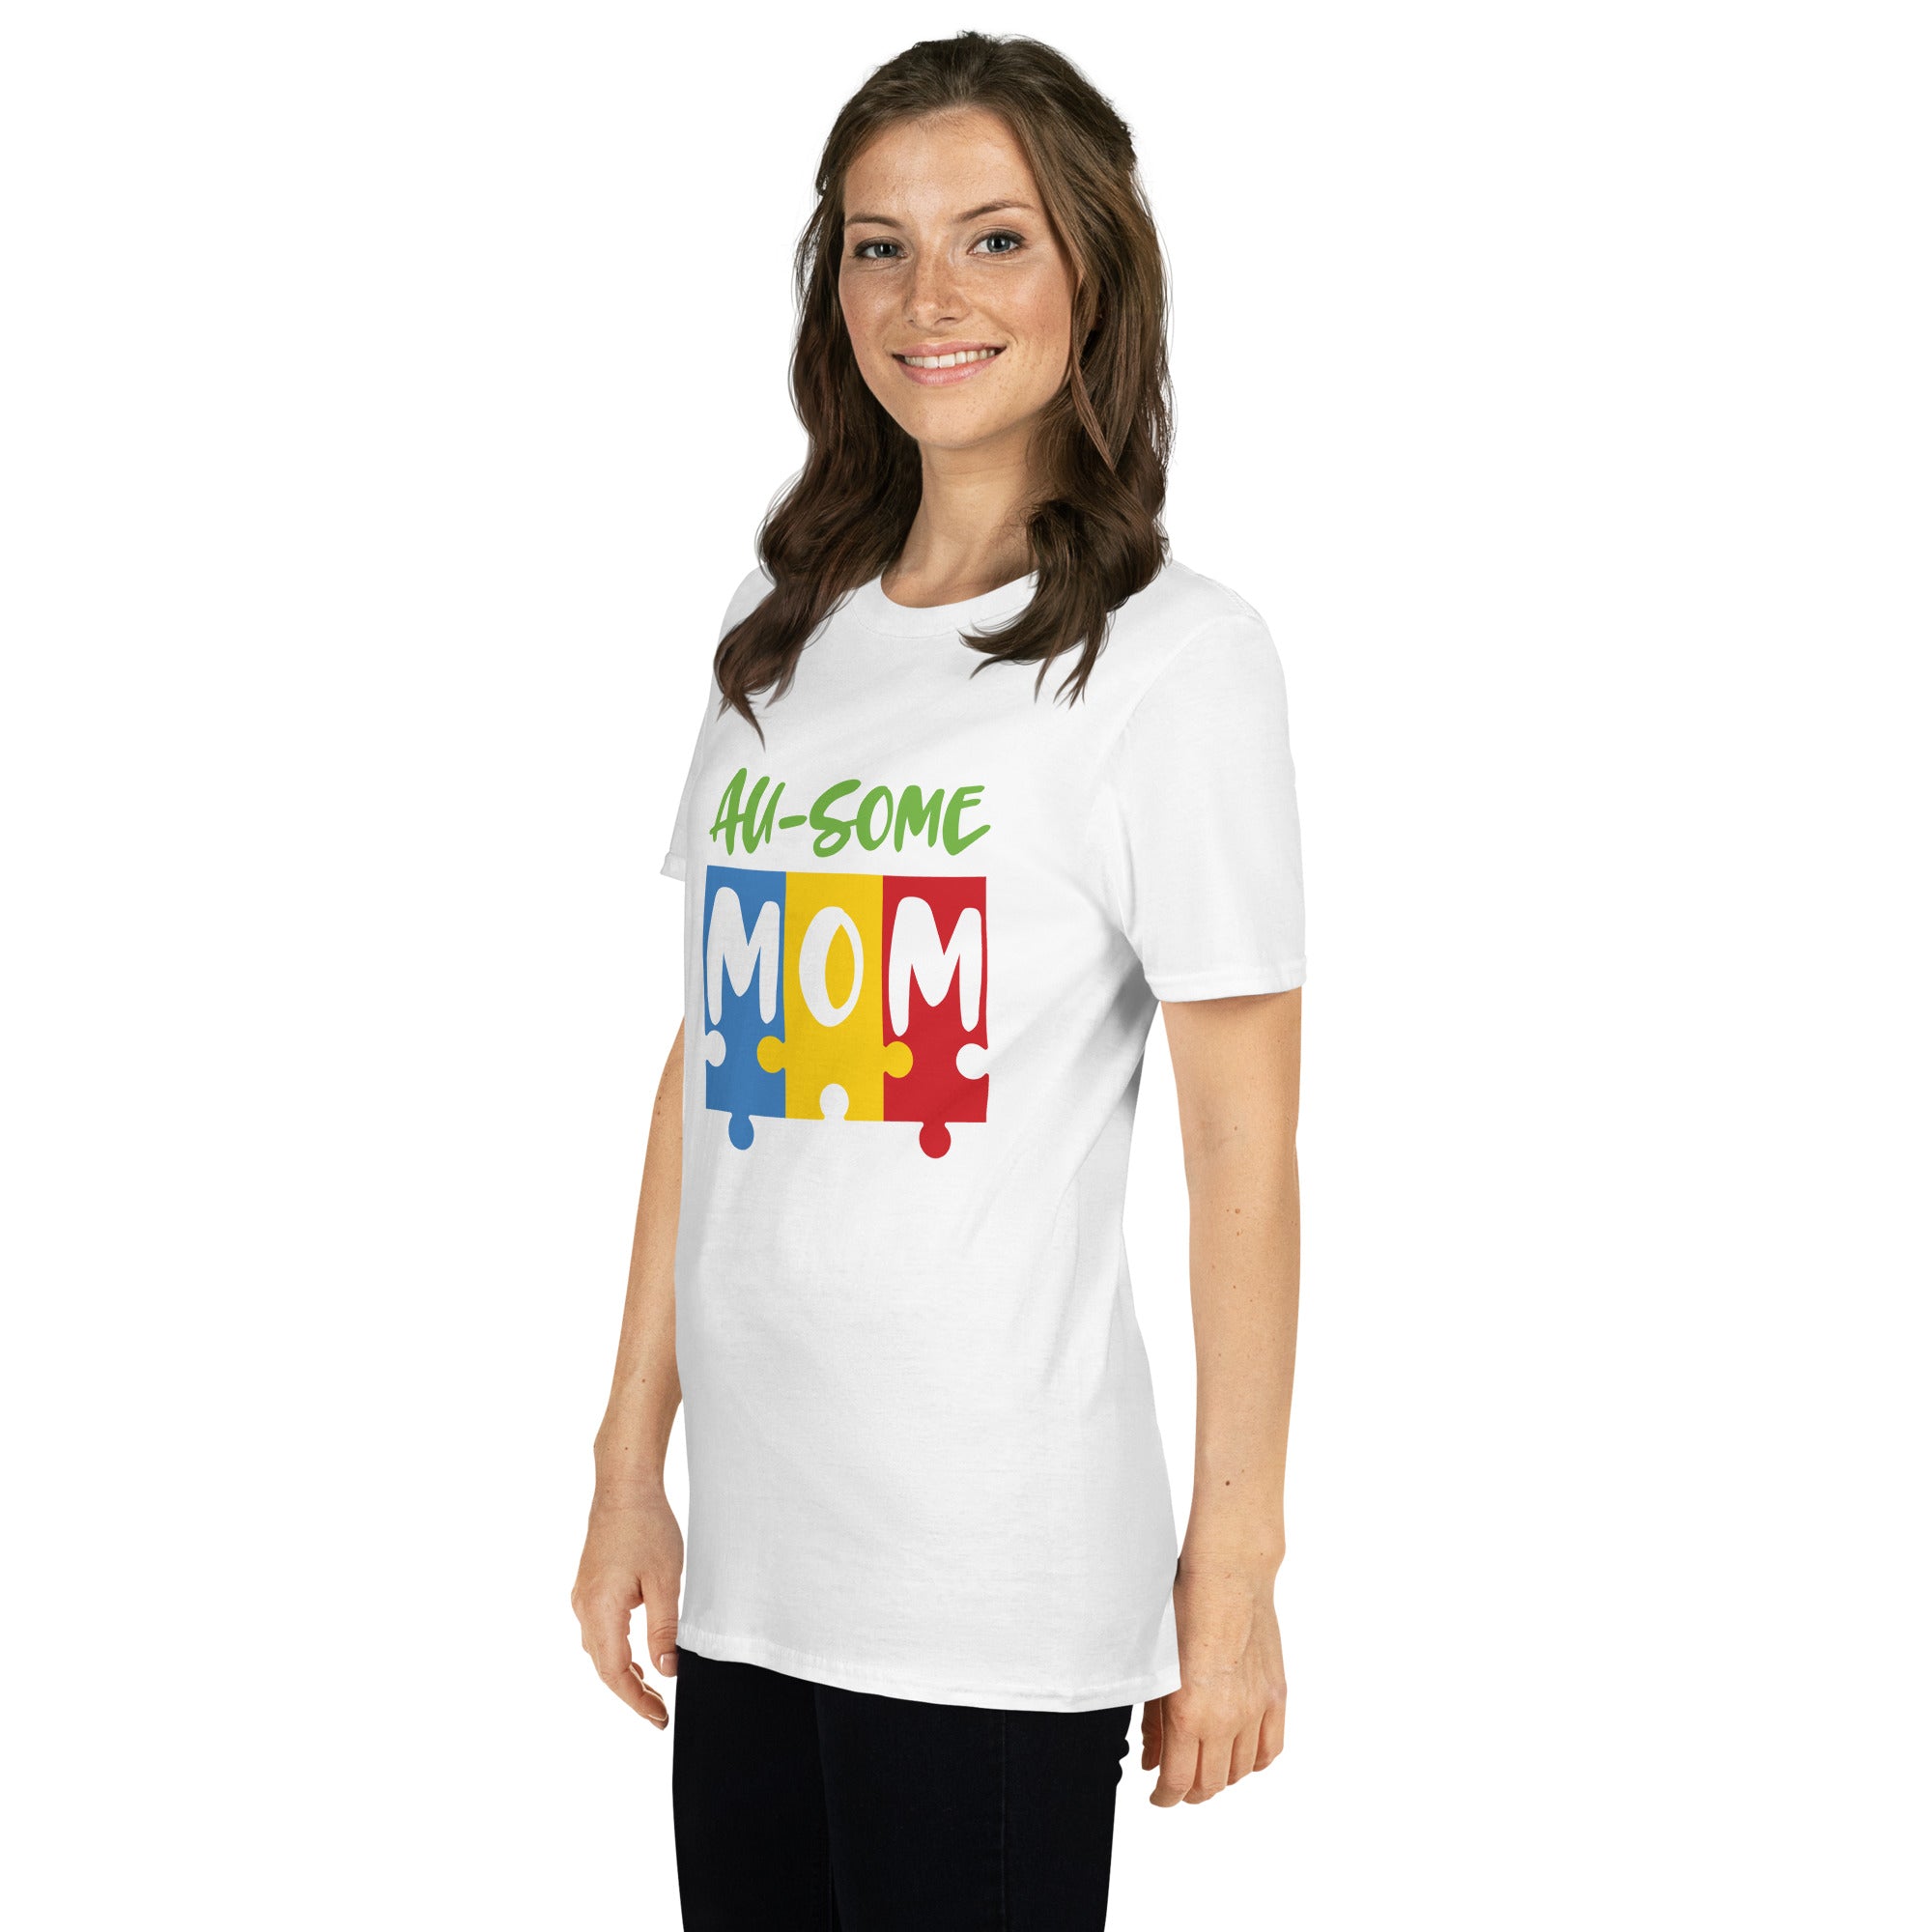 Short-Sleeve Unisex T-Shirt- Ausome Mom